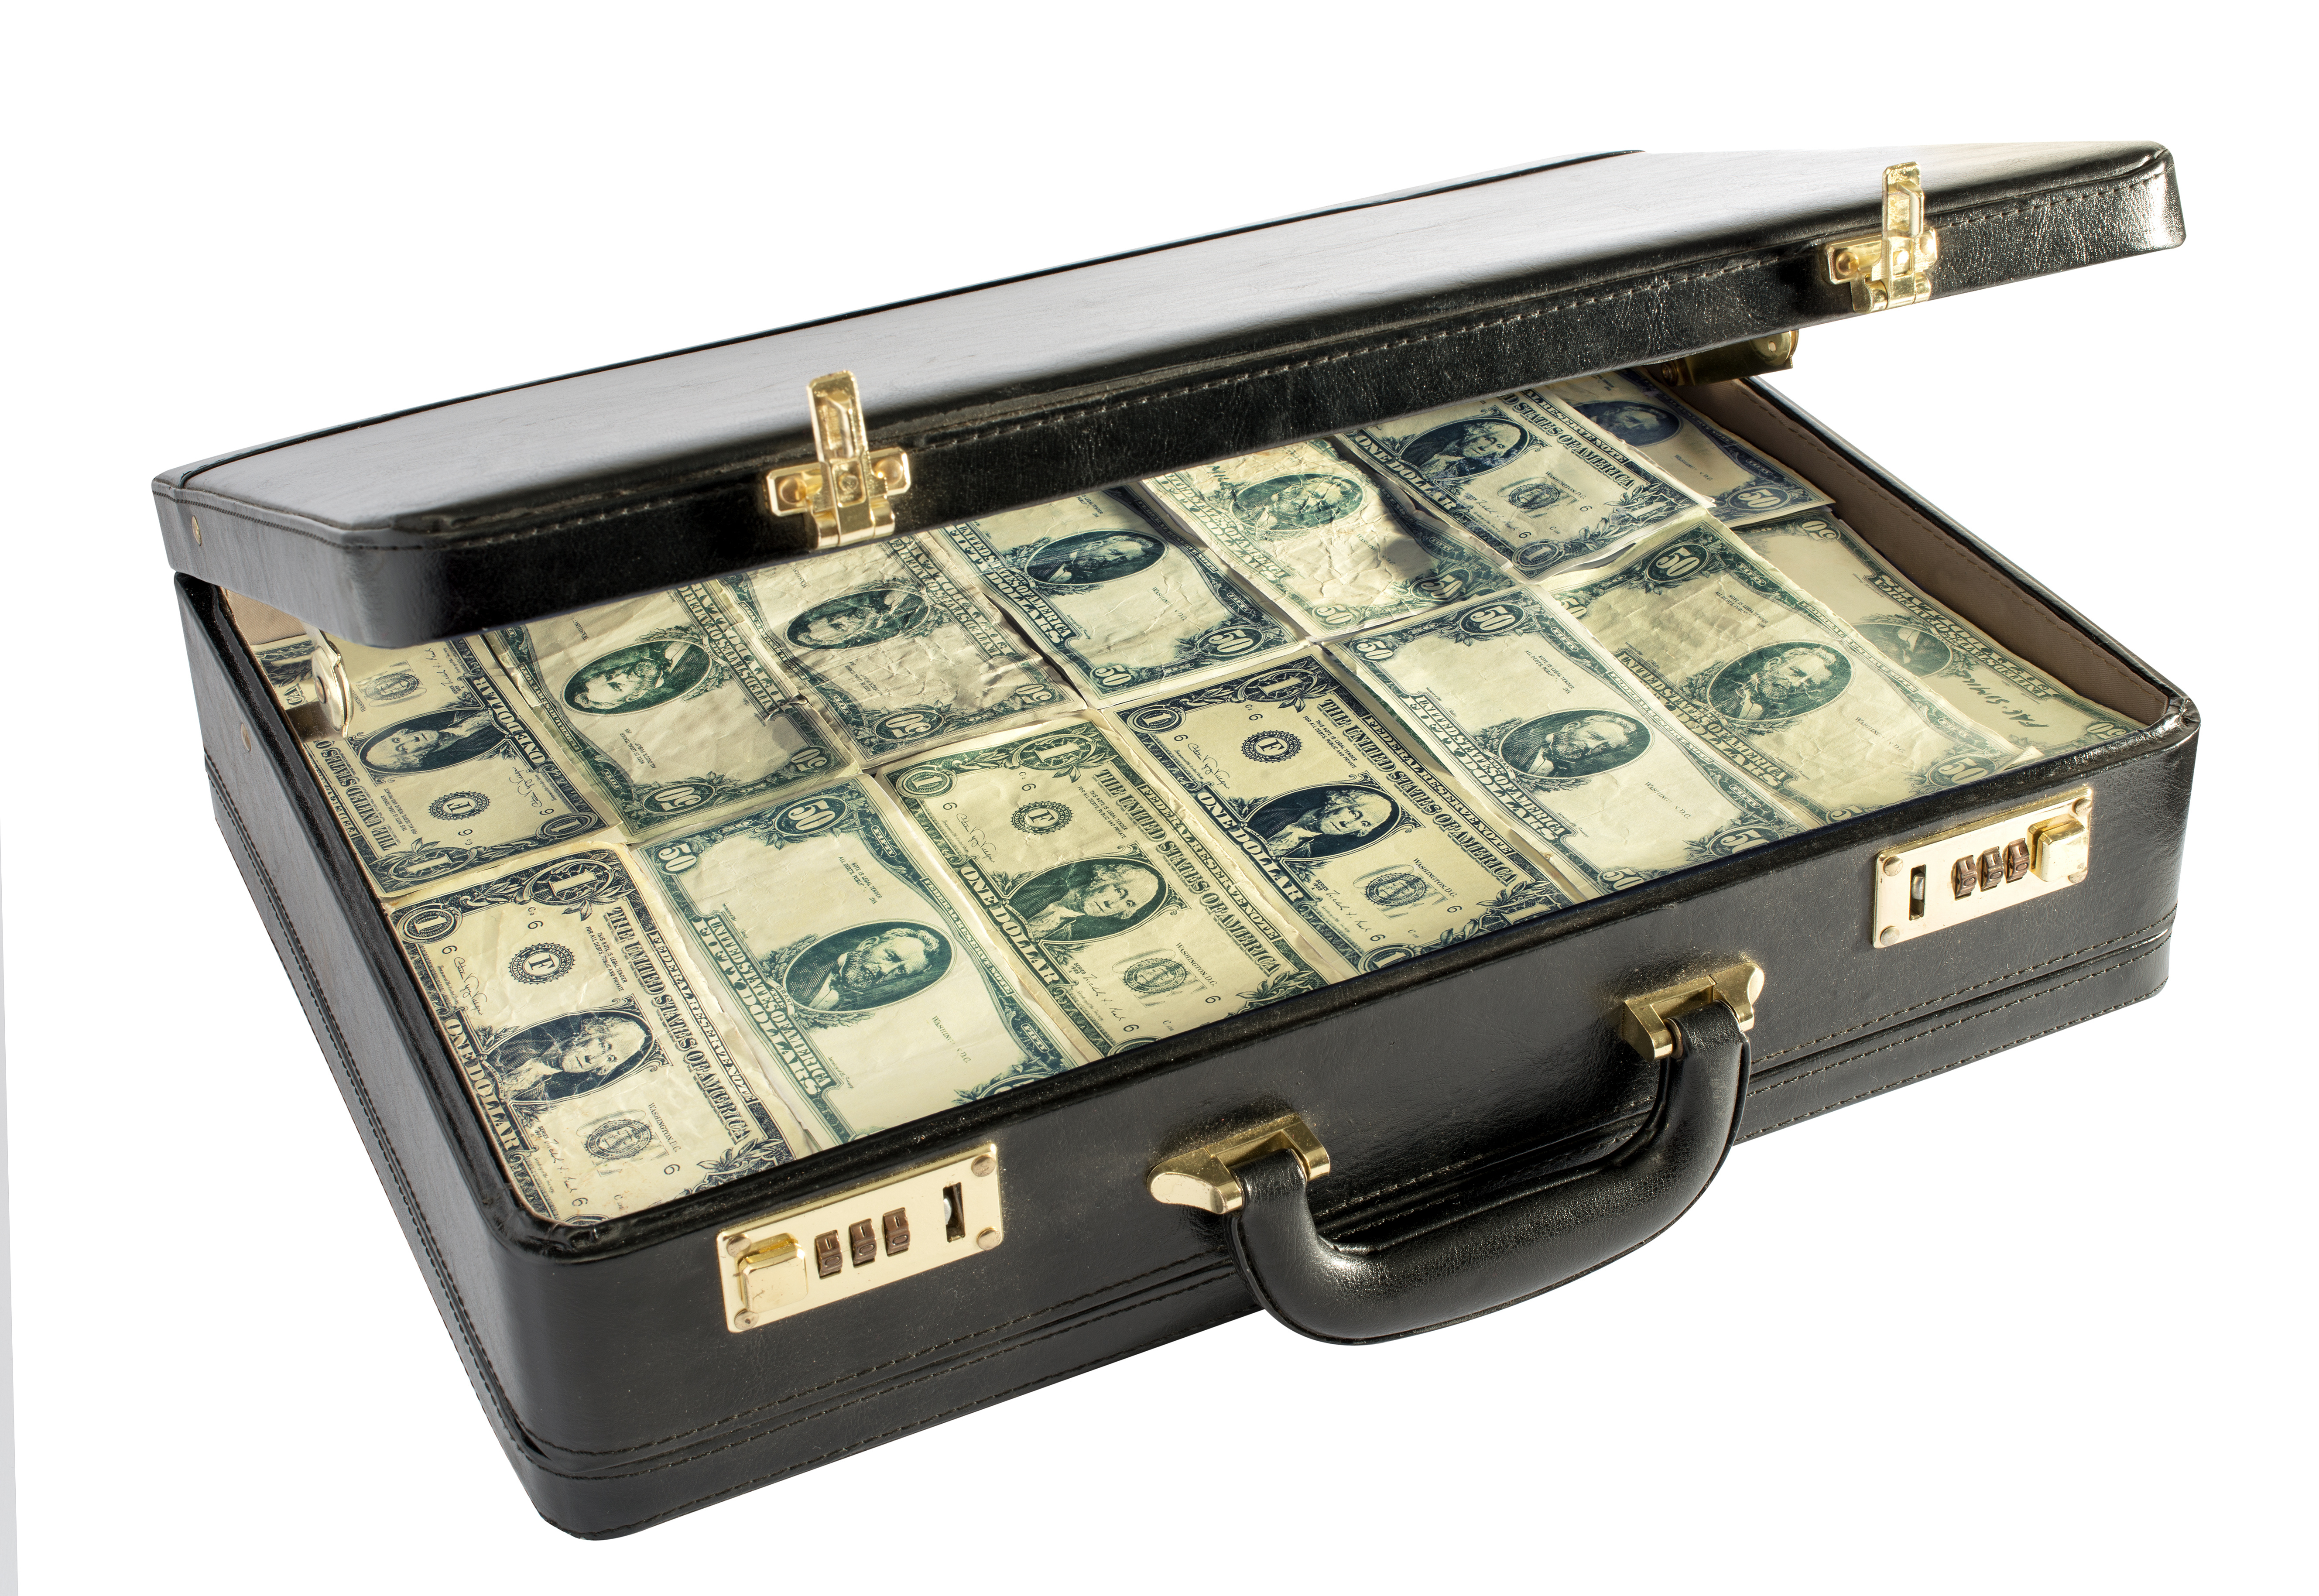 Old style money laundering. Image courtesy of DollarPhotoClub.com